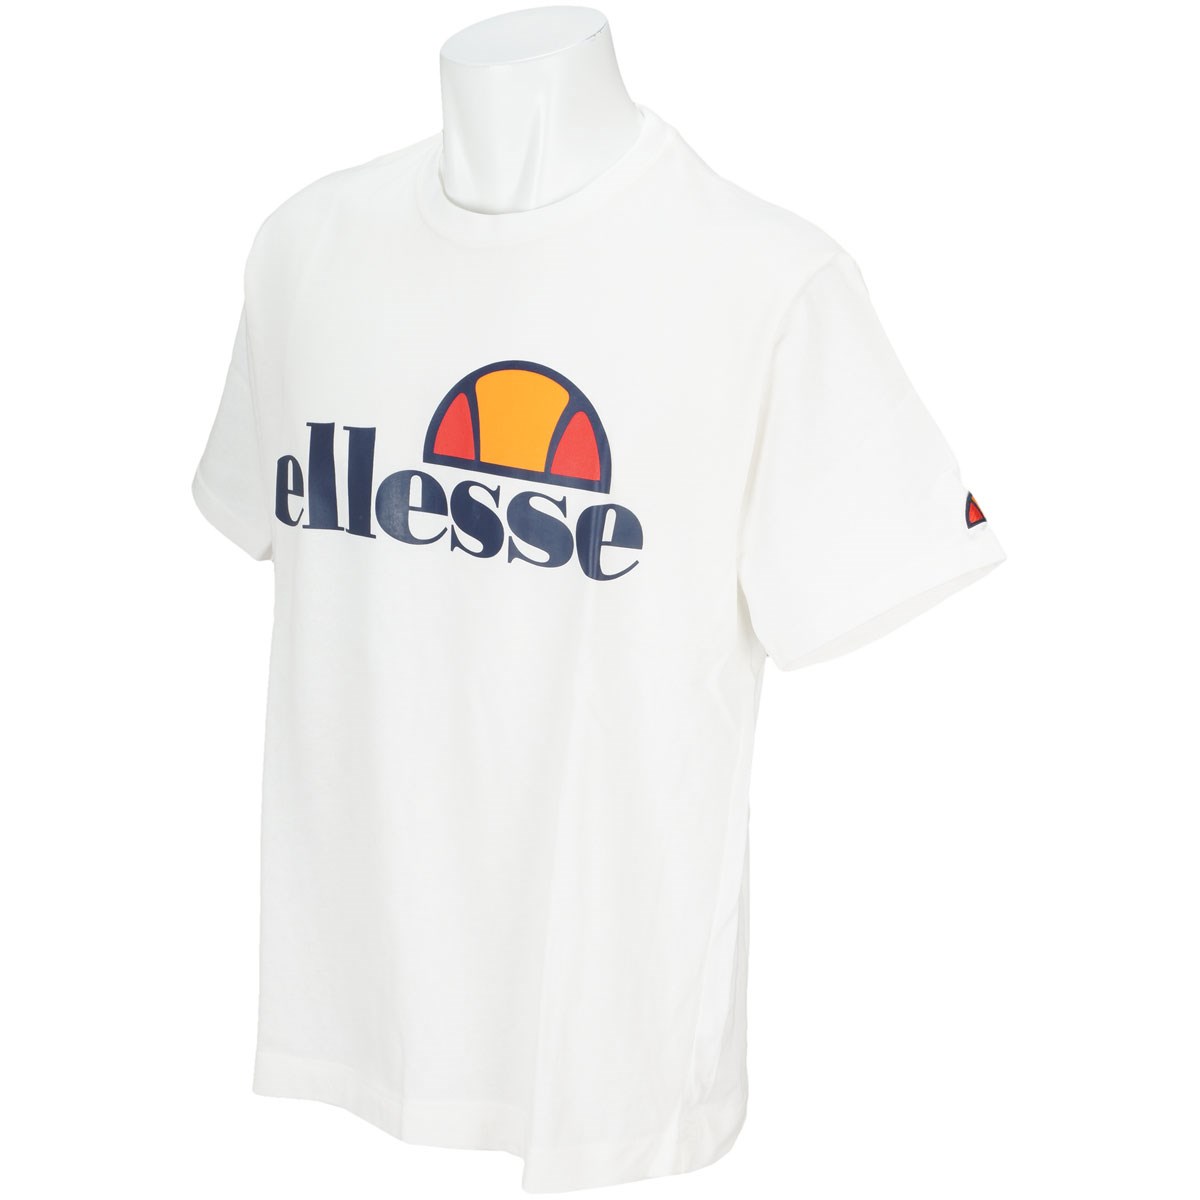  [アウトレット] [在庫限りのお買い得商品] エレッセ ヘリテージ半袖Tシャツ ゴルフウェア